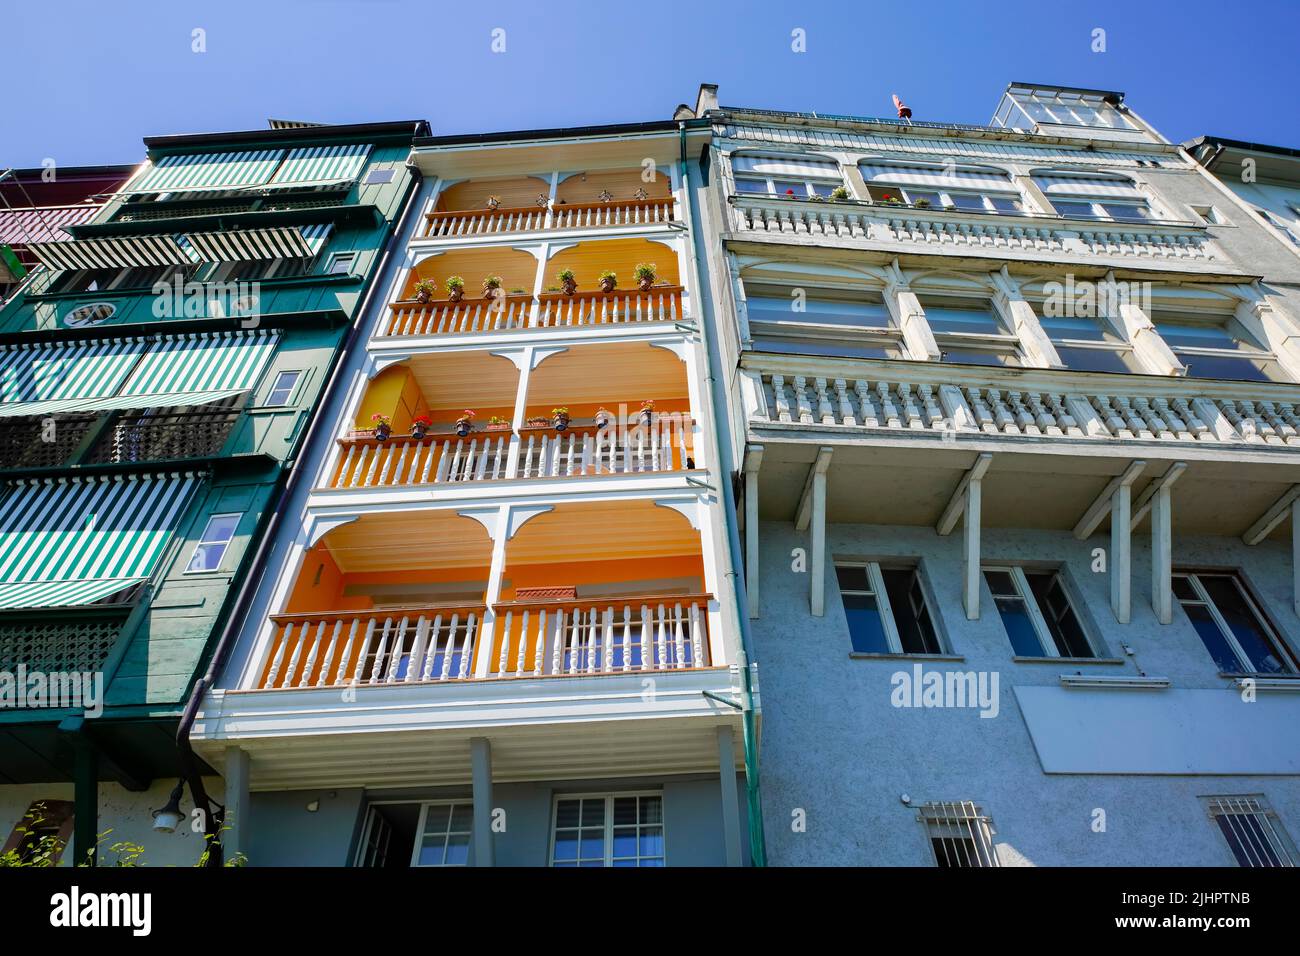 Residential buildings by St. Johanns-Rheinweg, Basel city, Basel-Stadt Canton, Switzerland. Stock Photo